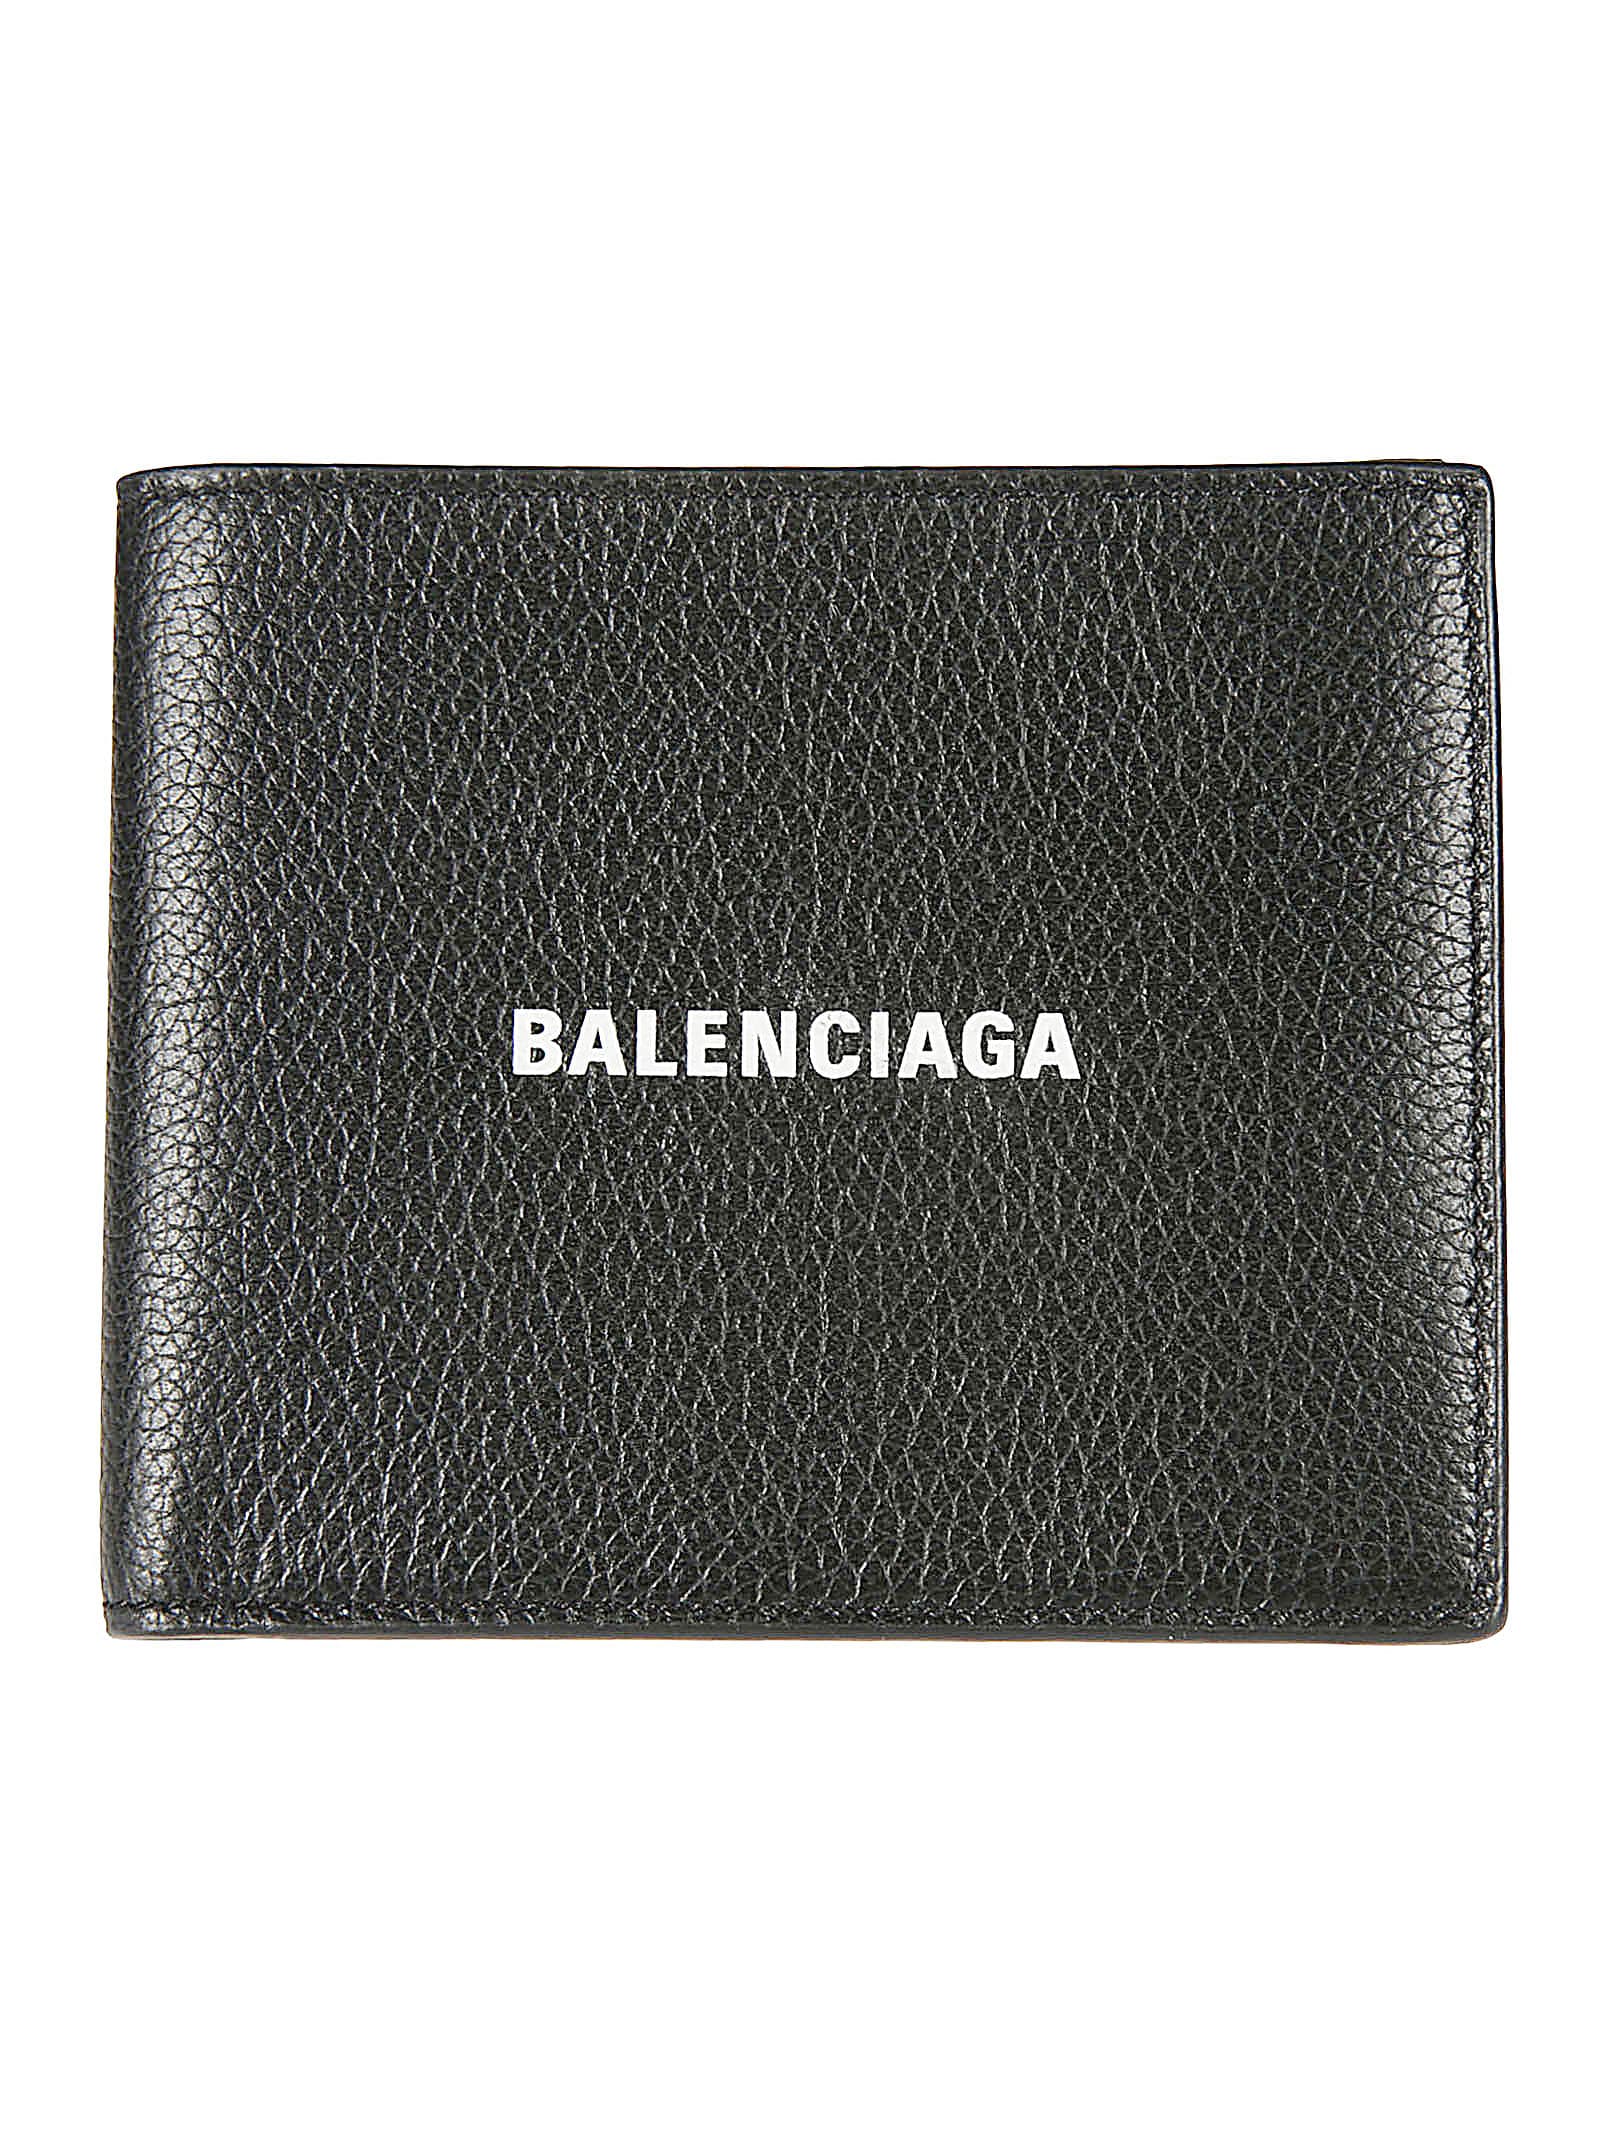 BALENCIAGA CASH SQUARE FOLD WALLET,11760870